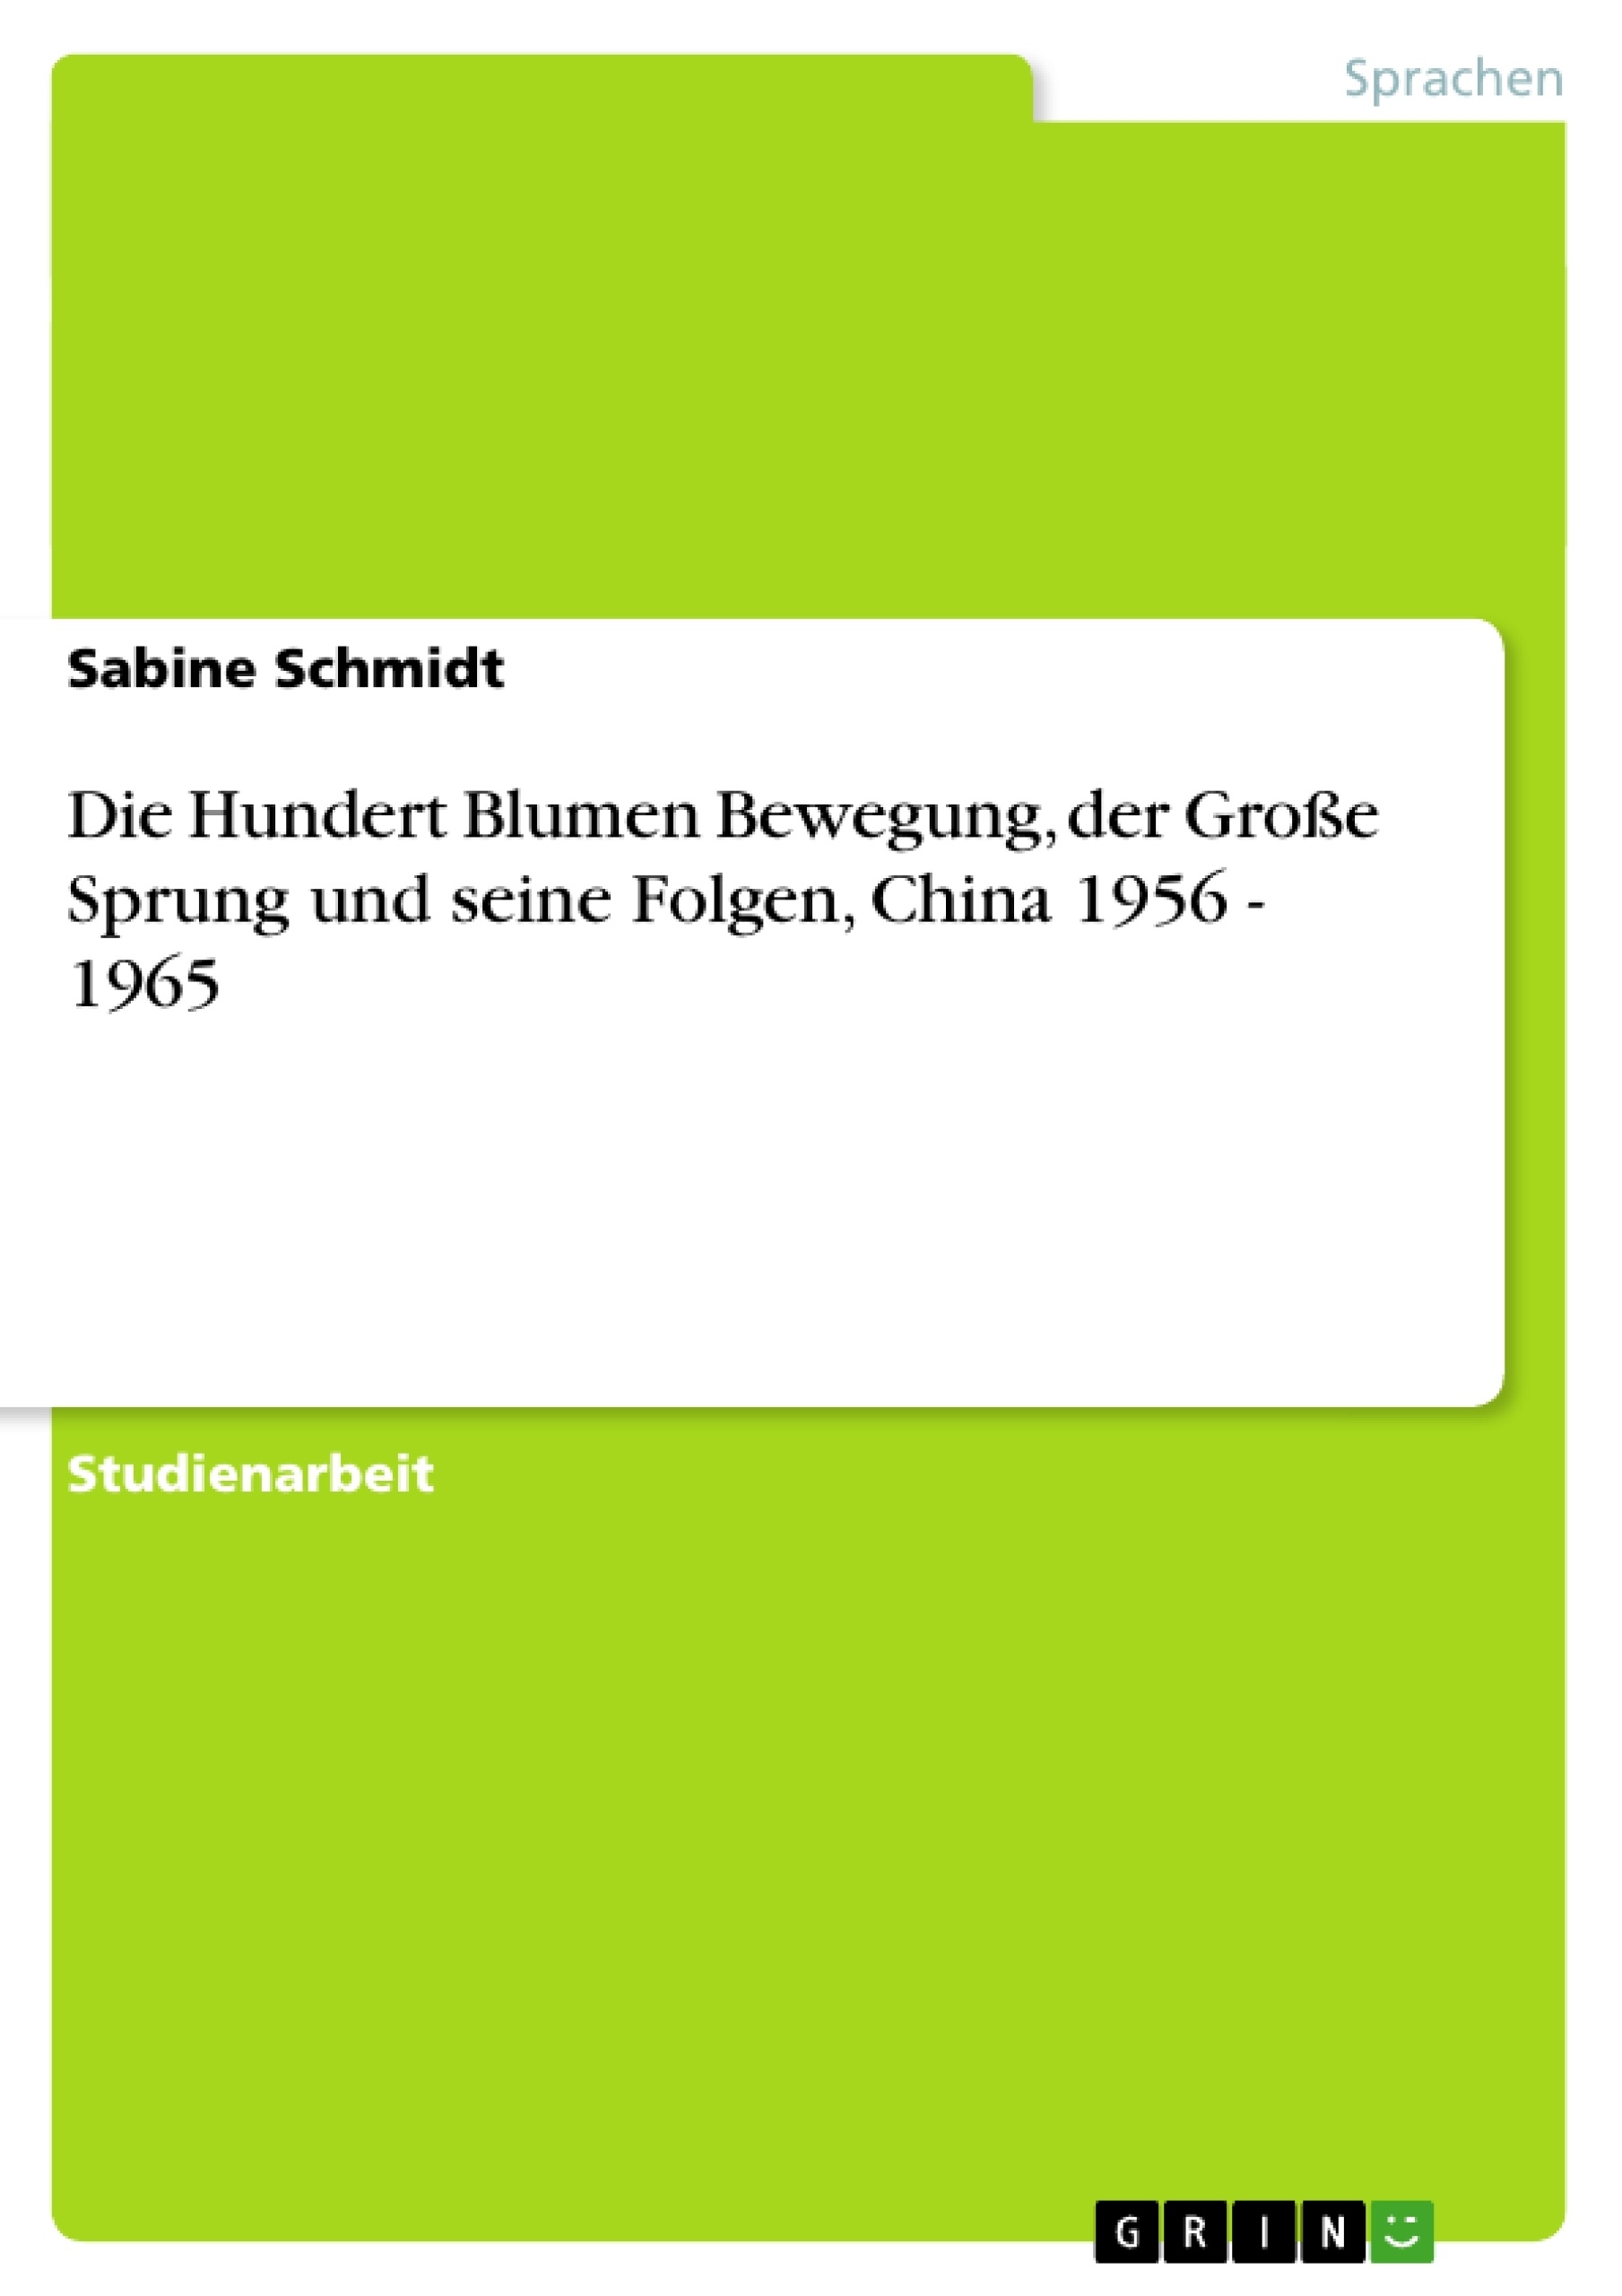 Title: Die Hundert Blumen Bewegung, der Große Sprung und seine Folgen, China 1956 - 1965